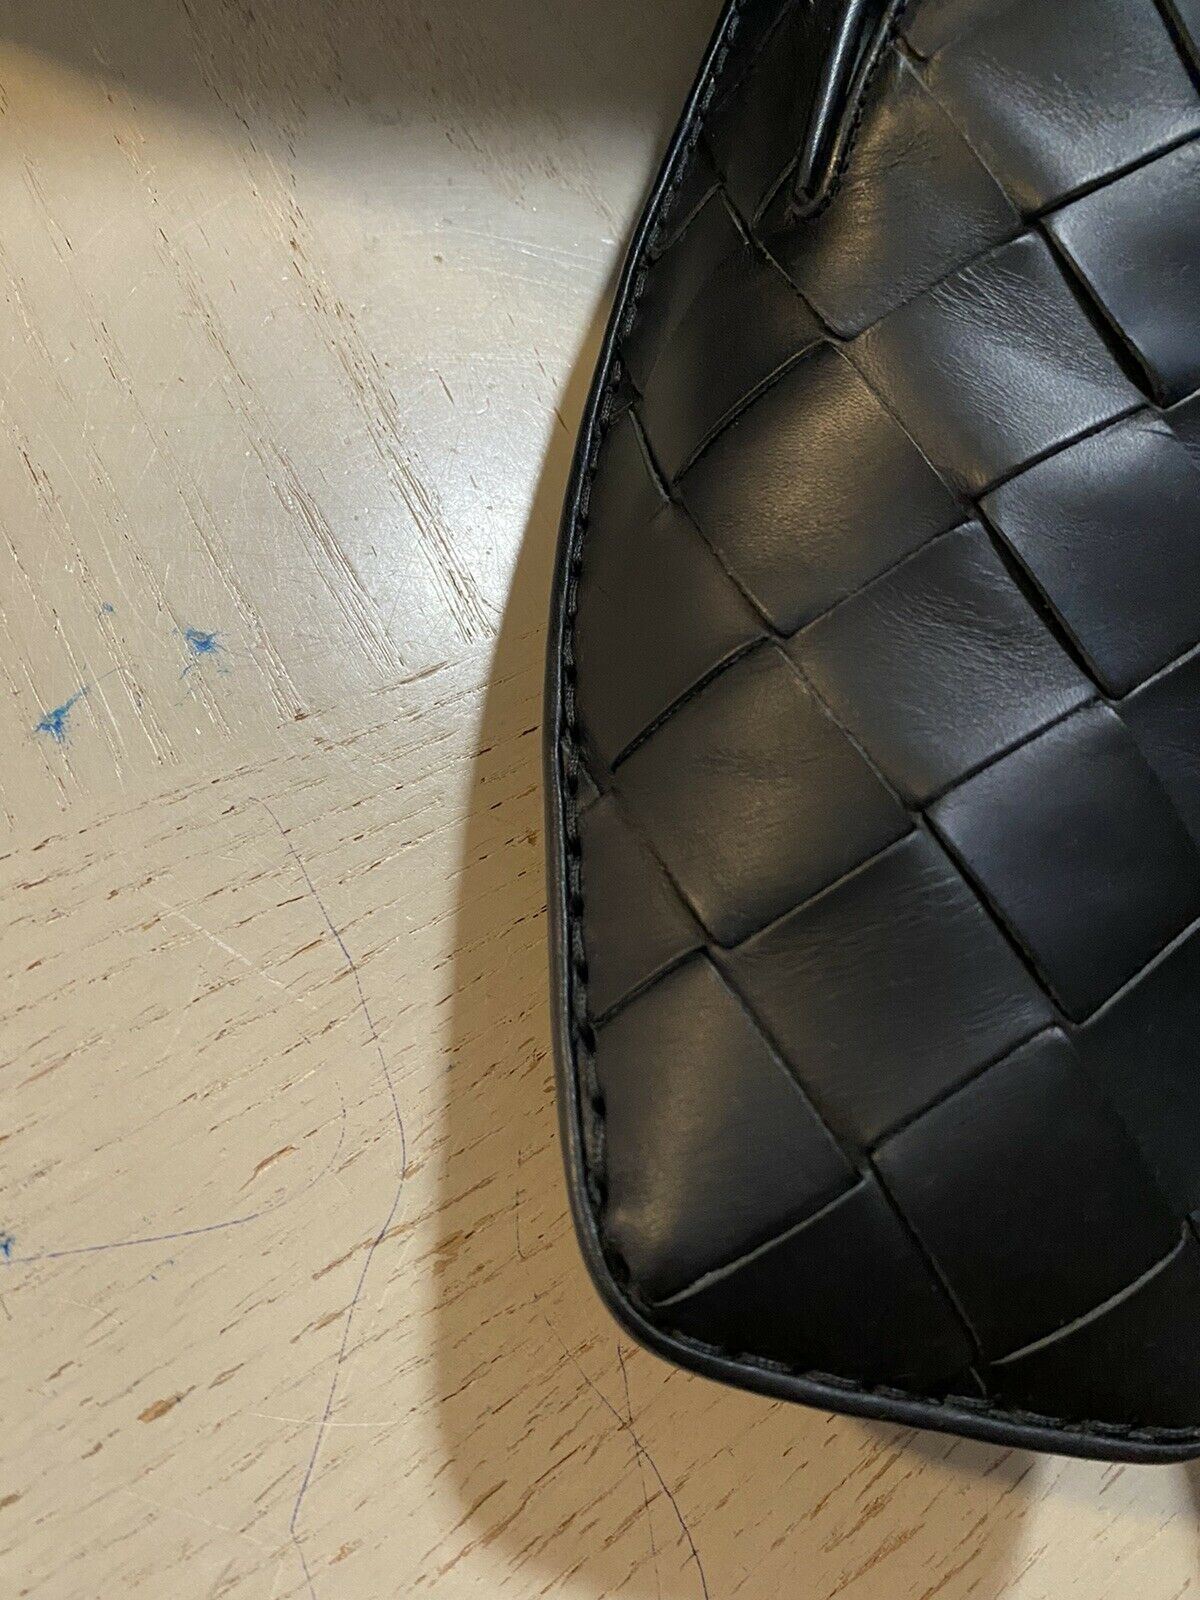 NIB $740 Bottega Veneta Men Leather Moccasin Driver Shoes Black 8 US/41 Eu